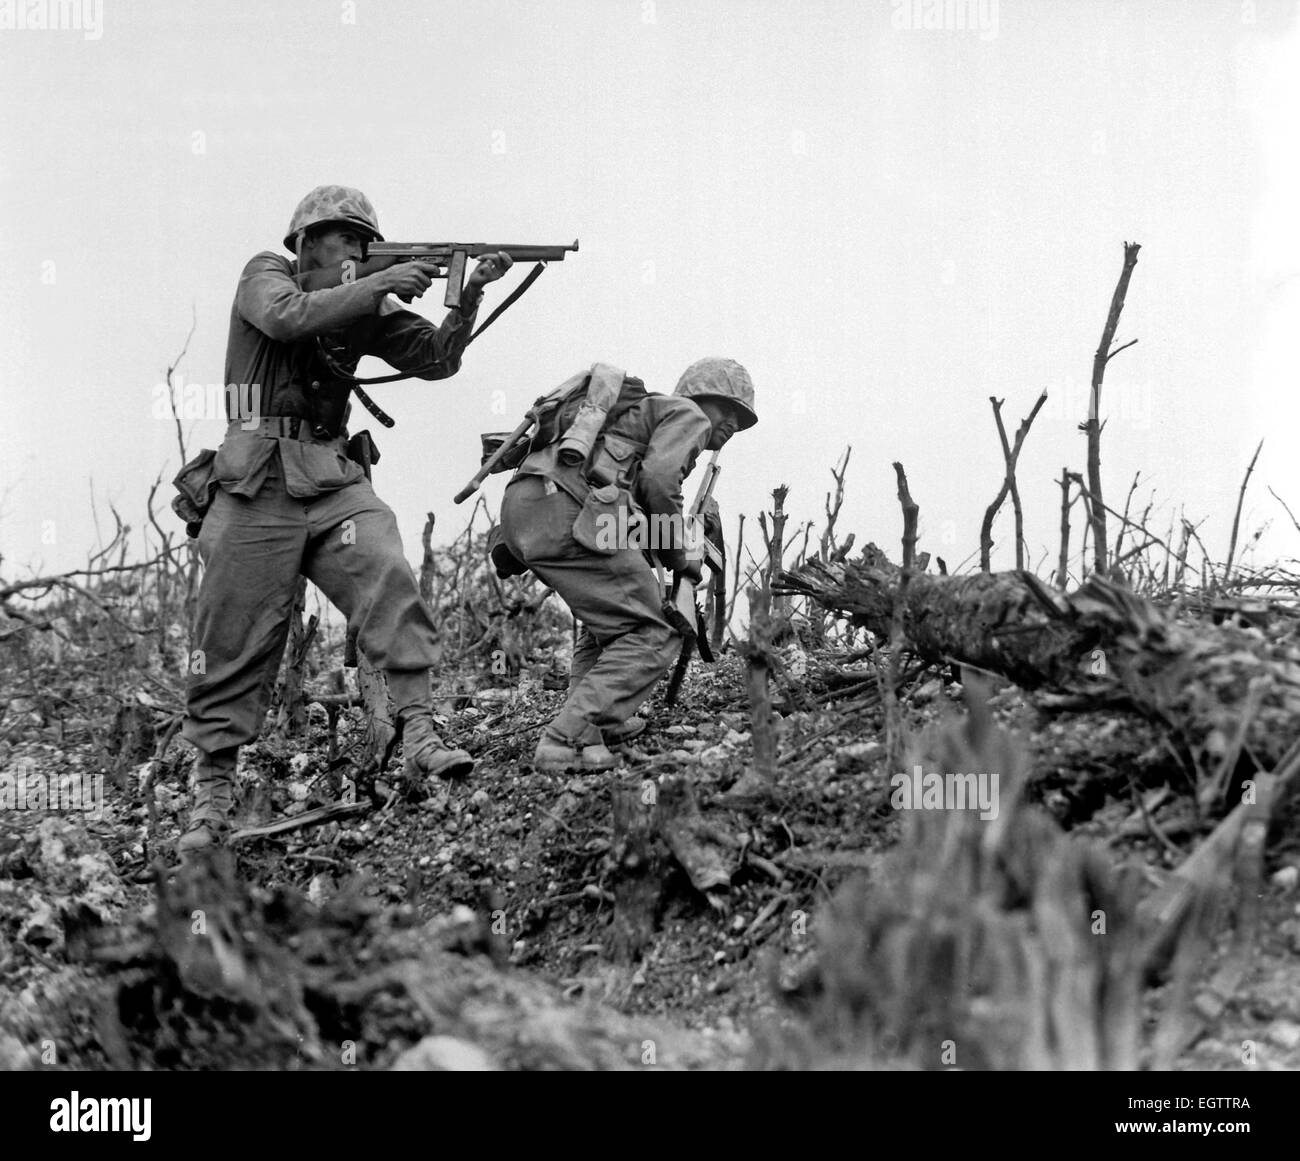 Marine Brände auf eine japanische Position mit einem M1 Thompson Maschinenpistole während eines Vorschusses auf Okinawa 1945 Stockfoto